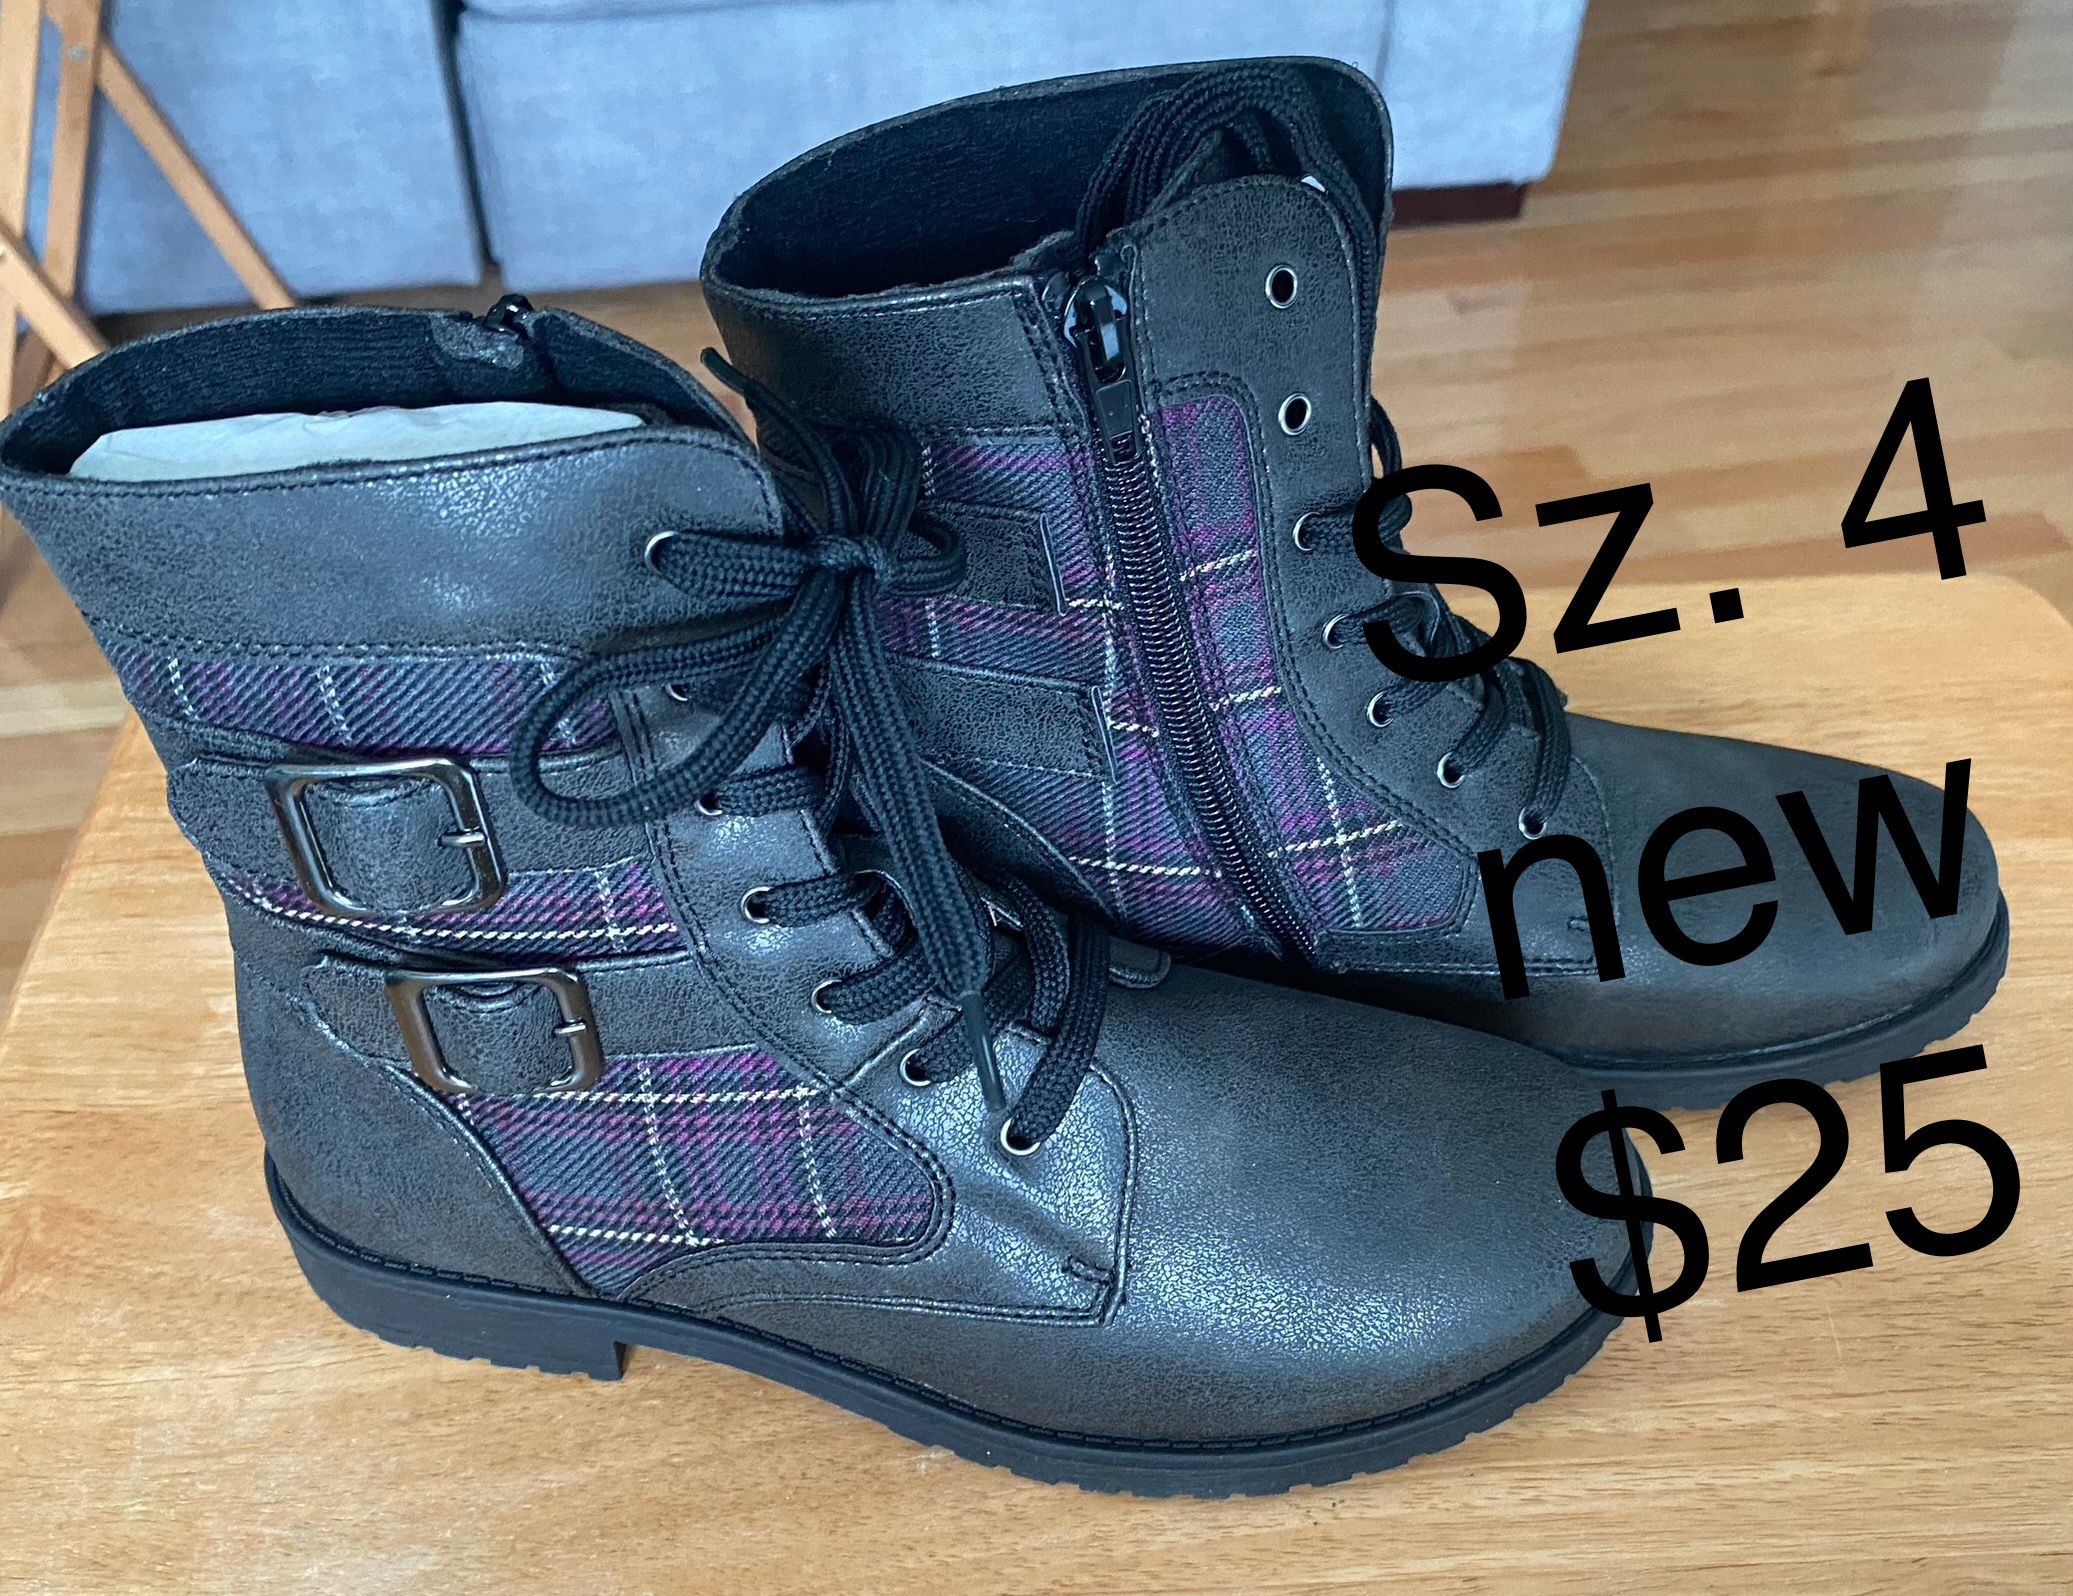 New! Girls Purple/ Maroon Plaid Boots! Sz 4